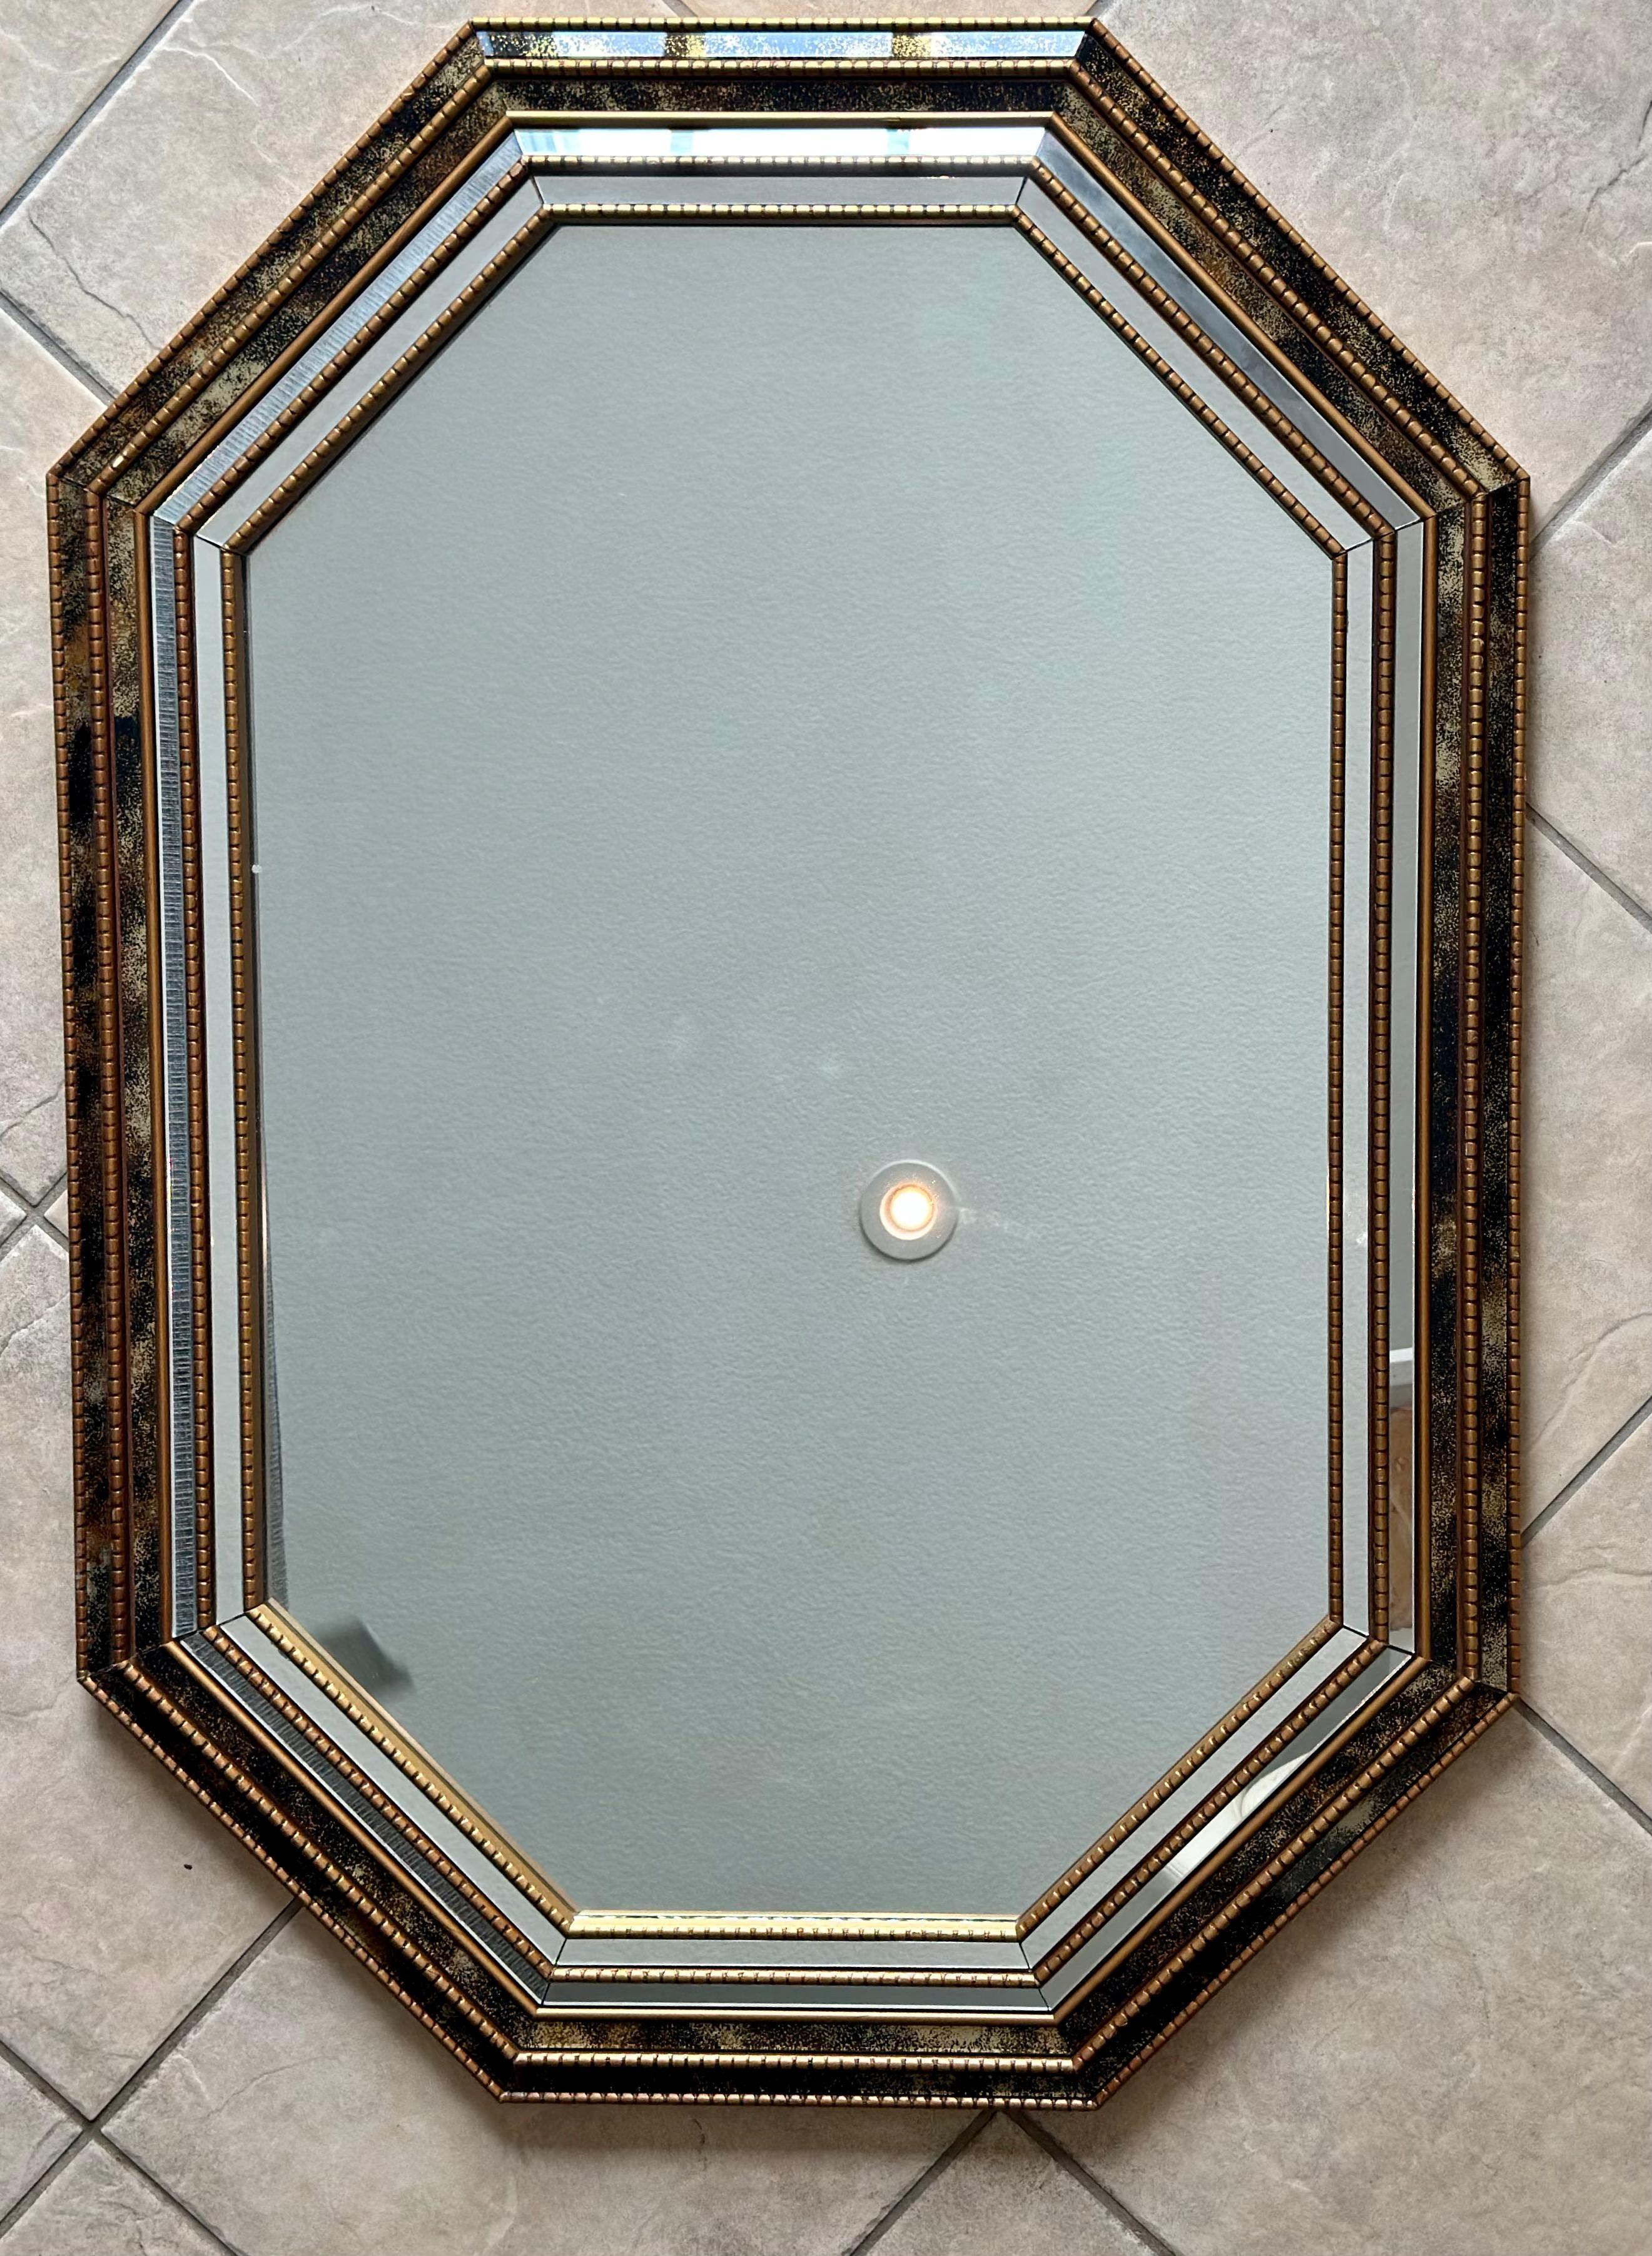 Miroir mural en bois doré à 8 faces de style vénitien, accentué par de plus petits panneaux de miroir clair et veiné d'or. Miroir mural de style Hollywood Regency du milieu du siècle.
  